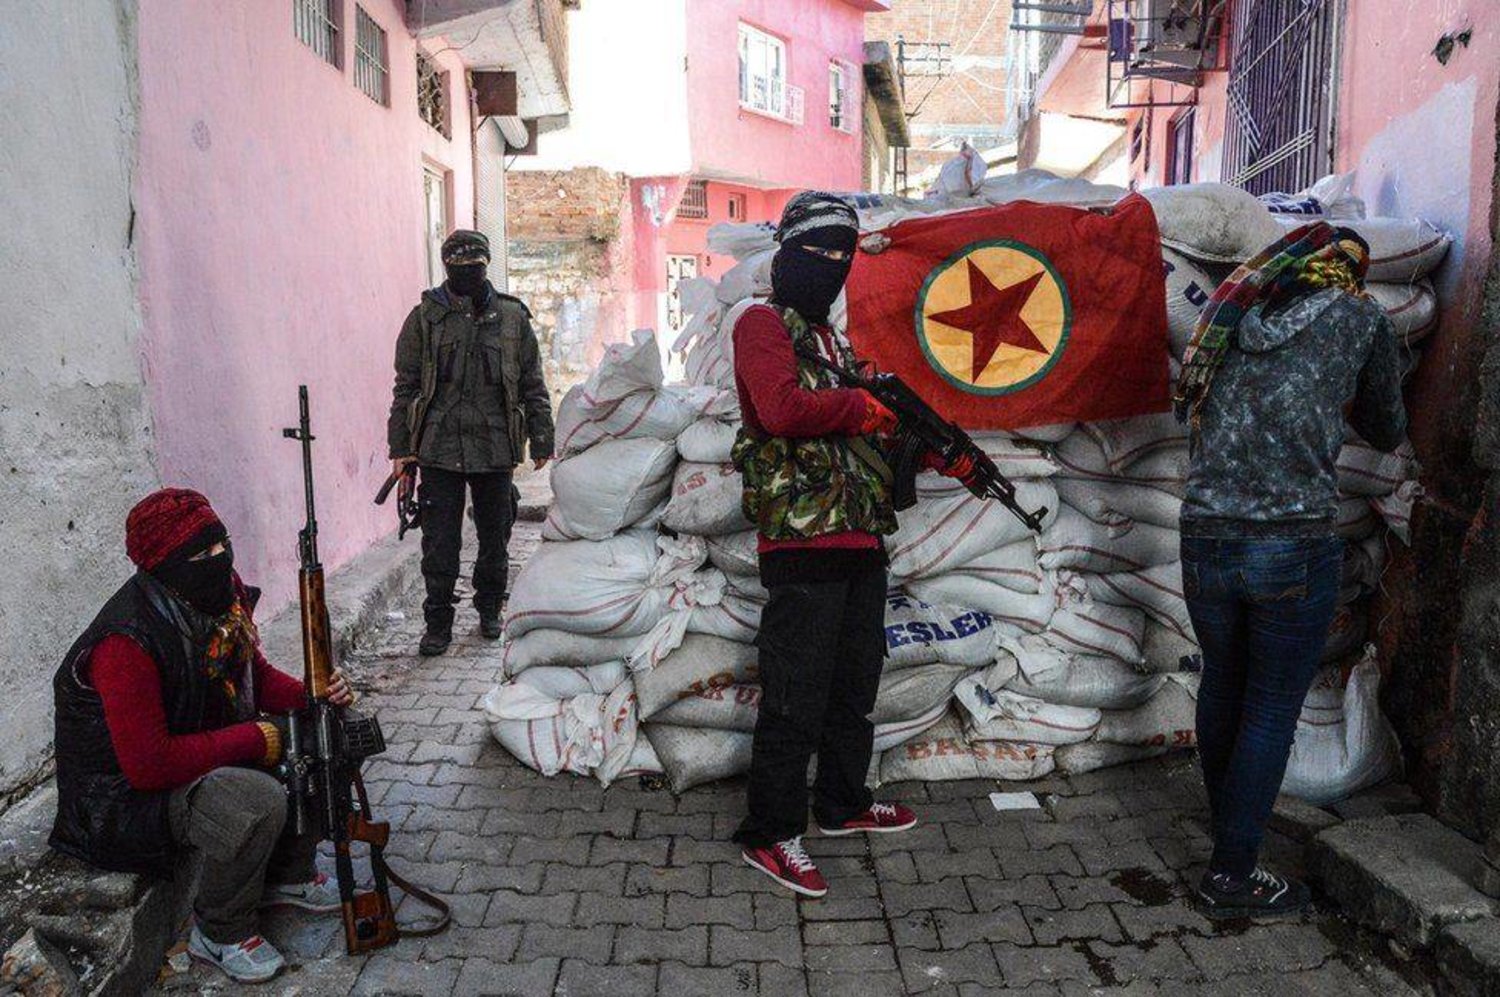 تركيا تطالب السويد باتخاذ خطوات لكبح جماح الأعضاء في «حزب العمال الكردستاني» الذي يصنفه الاتحاد الأوروبي والولايات المتحدة جماعة إرهابية (أ.ف.ب)